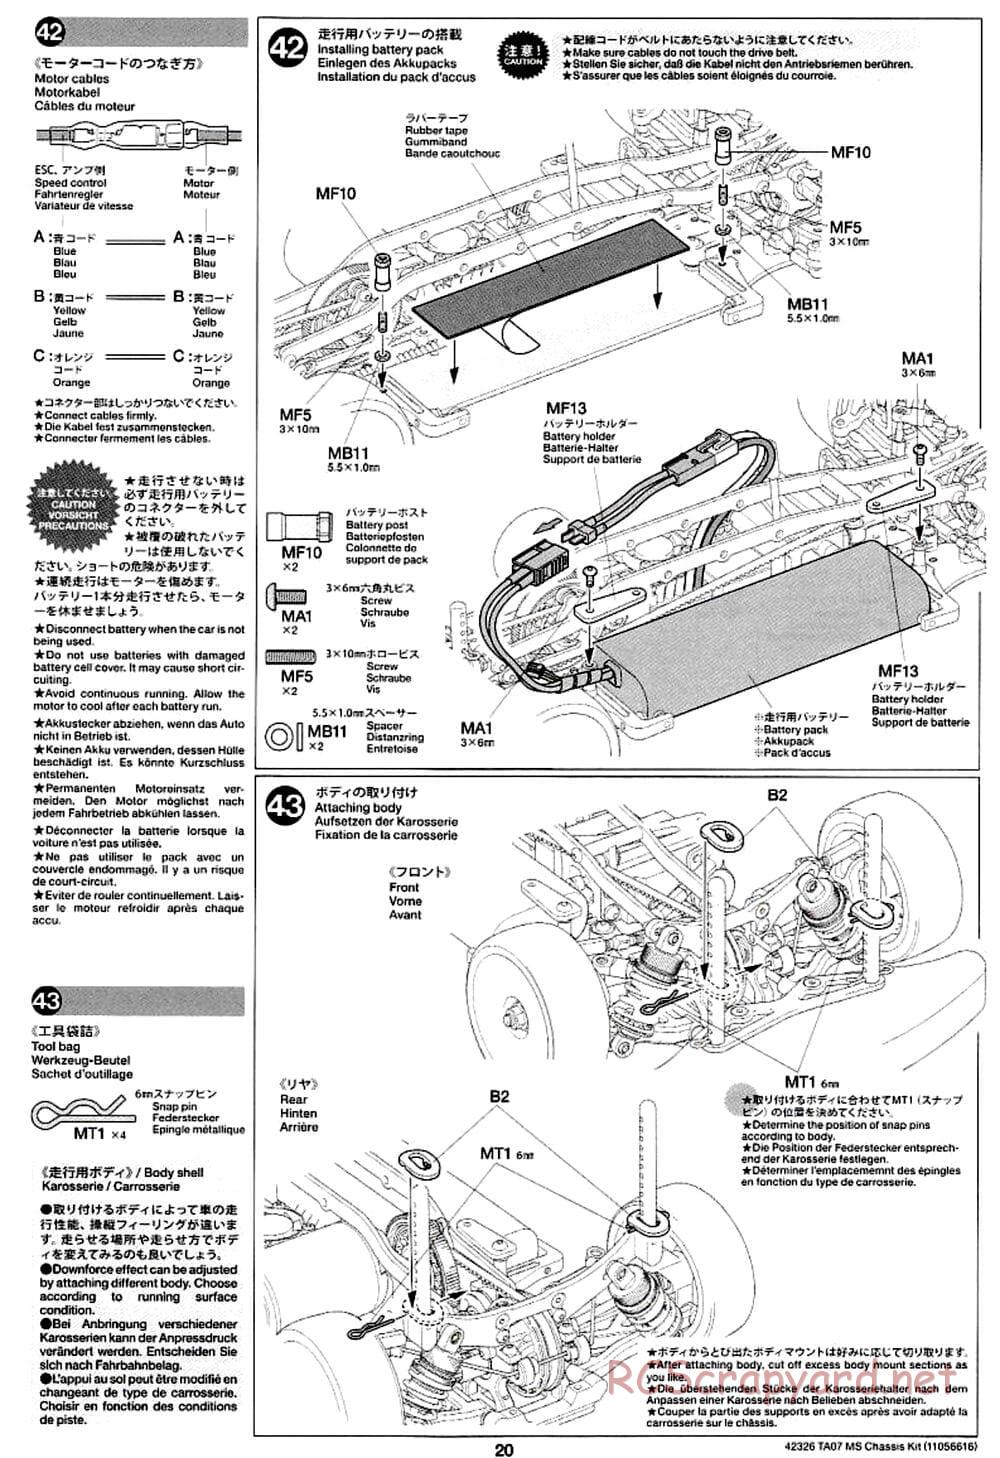 Tamiya - TA07 MS Chassis - Manual - Page 20